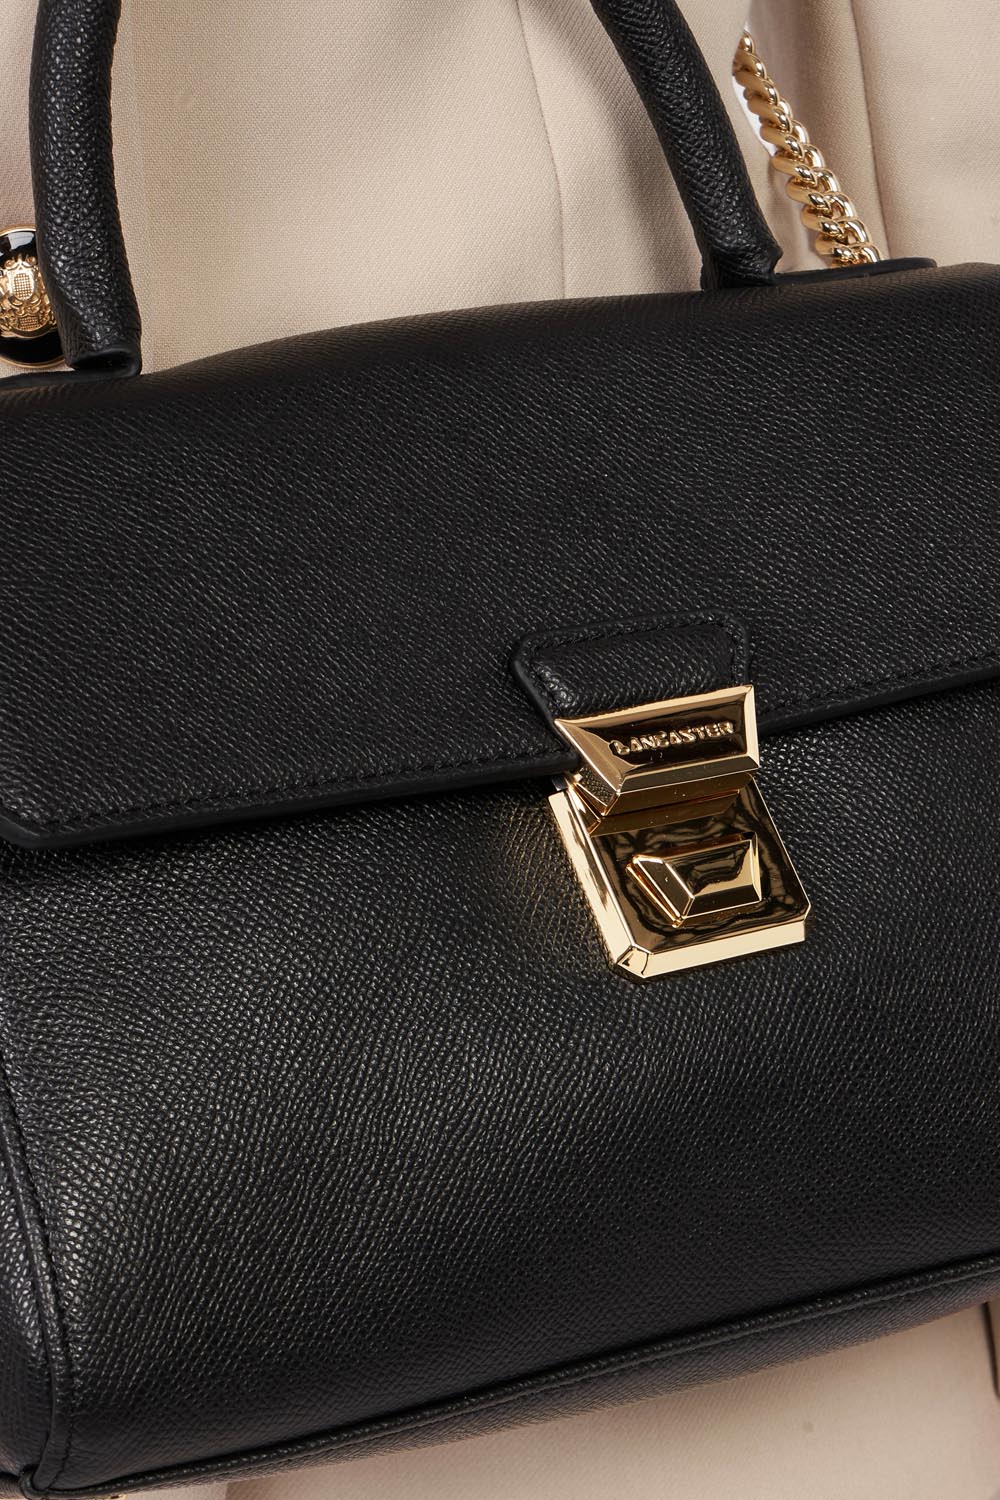 handbag - delphino tina #couleur_noir